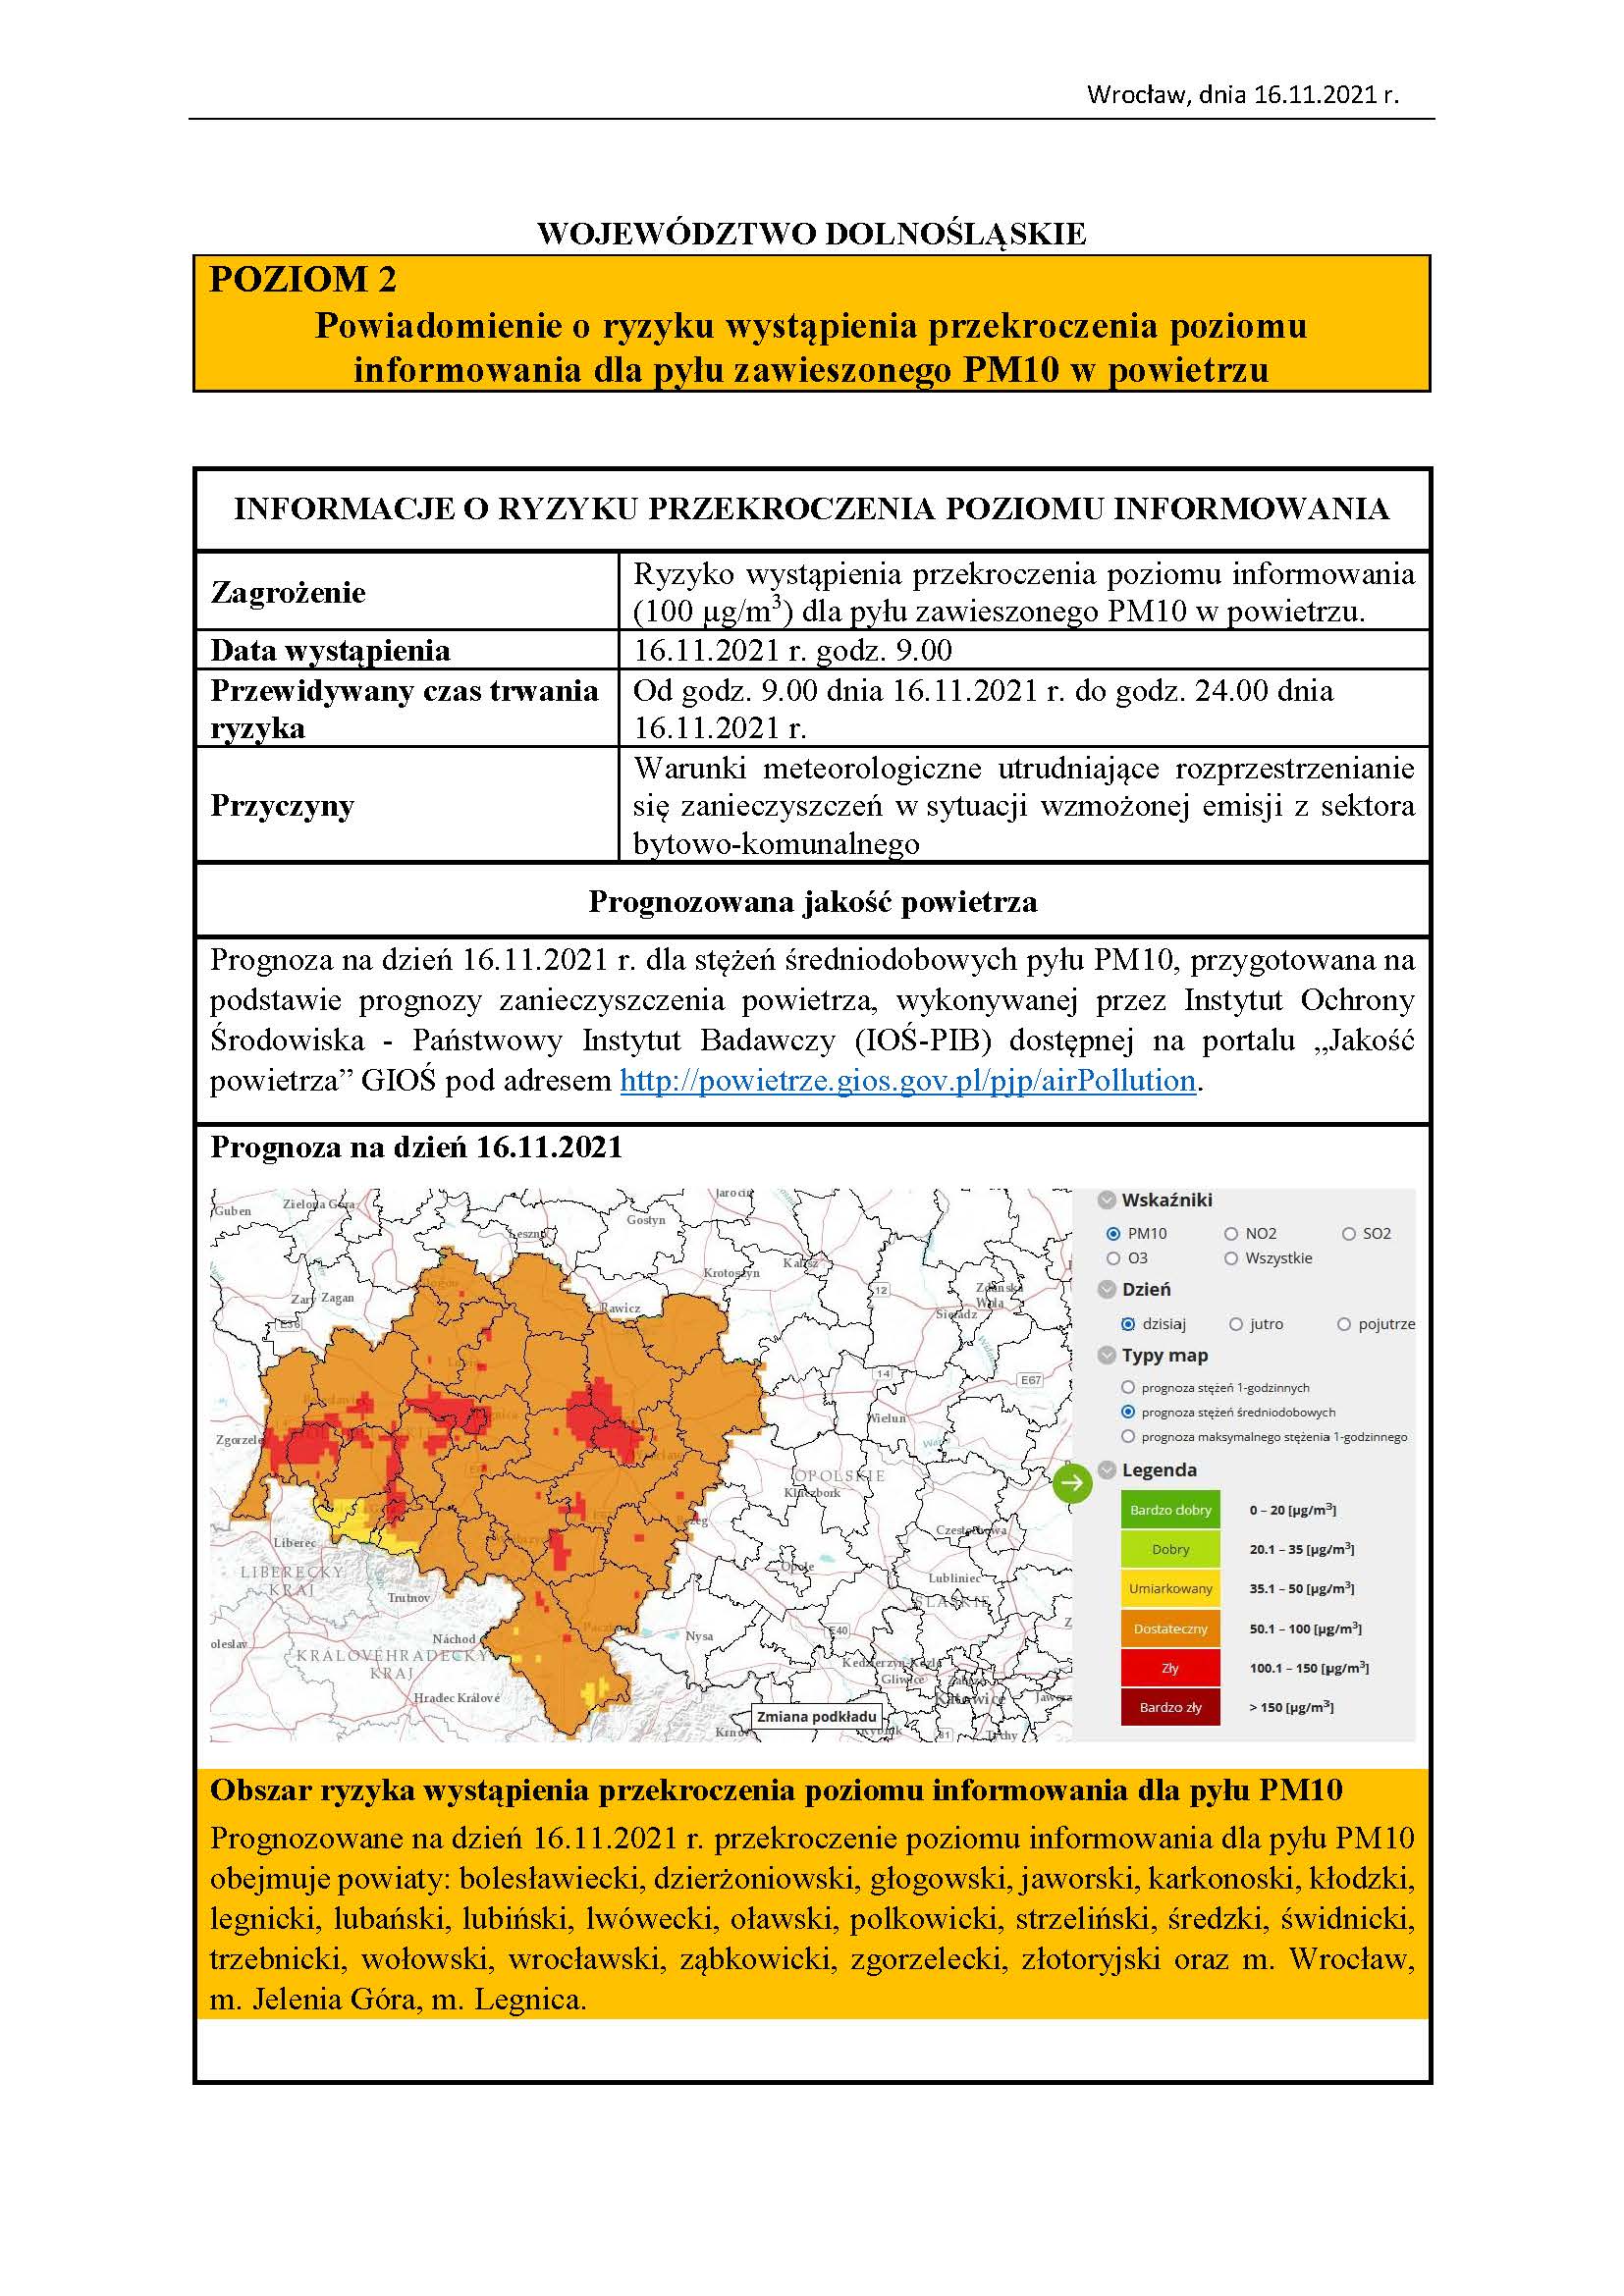 [POZIOM 2]:  Powiadomienie o ryzyku wystąpienia przekroczenia poziomu  informowania dla pyłu zawieszonego PM10 w powietrzu